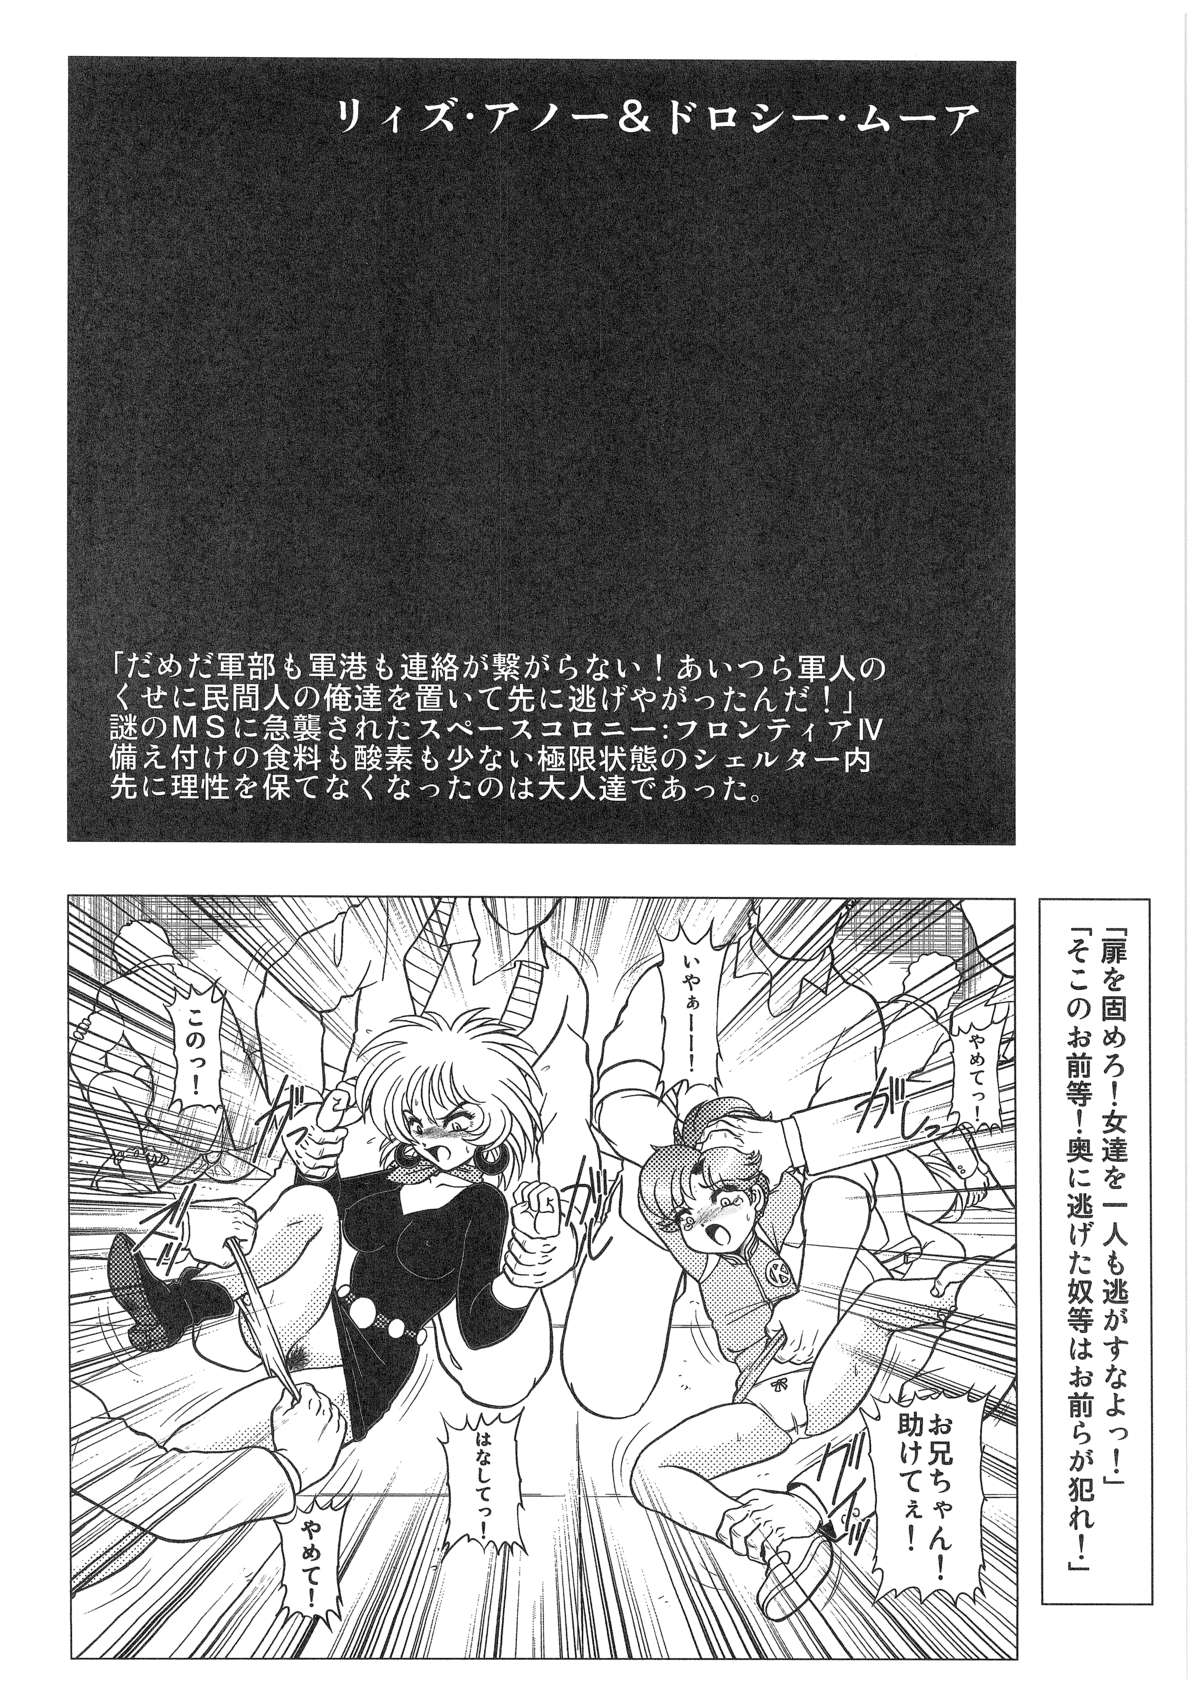 [Dakimakuma, Jingai Makyou Club (WING☆BIRD)] CHARA EMU W☆B010 GONDAM 008 ZZ-W-F91 (Various) page 17 full